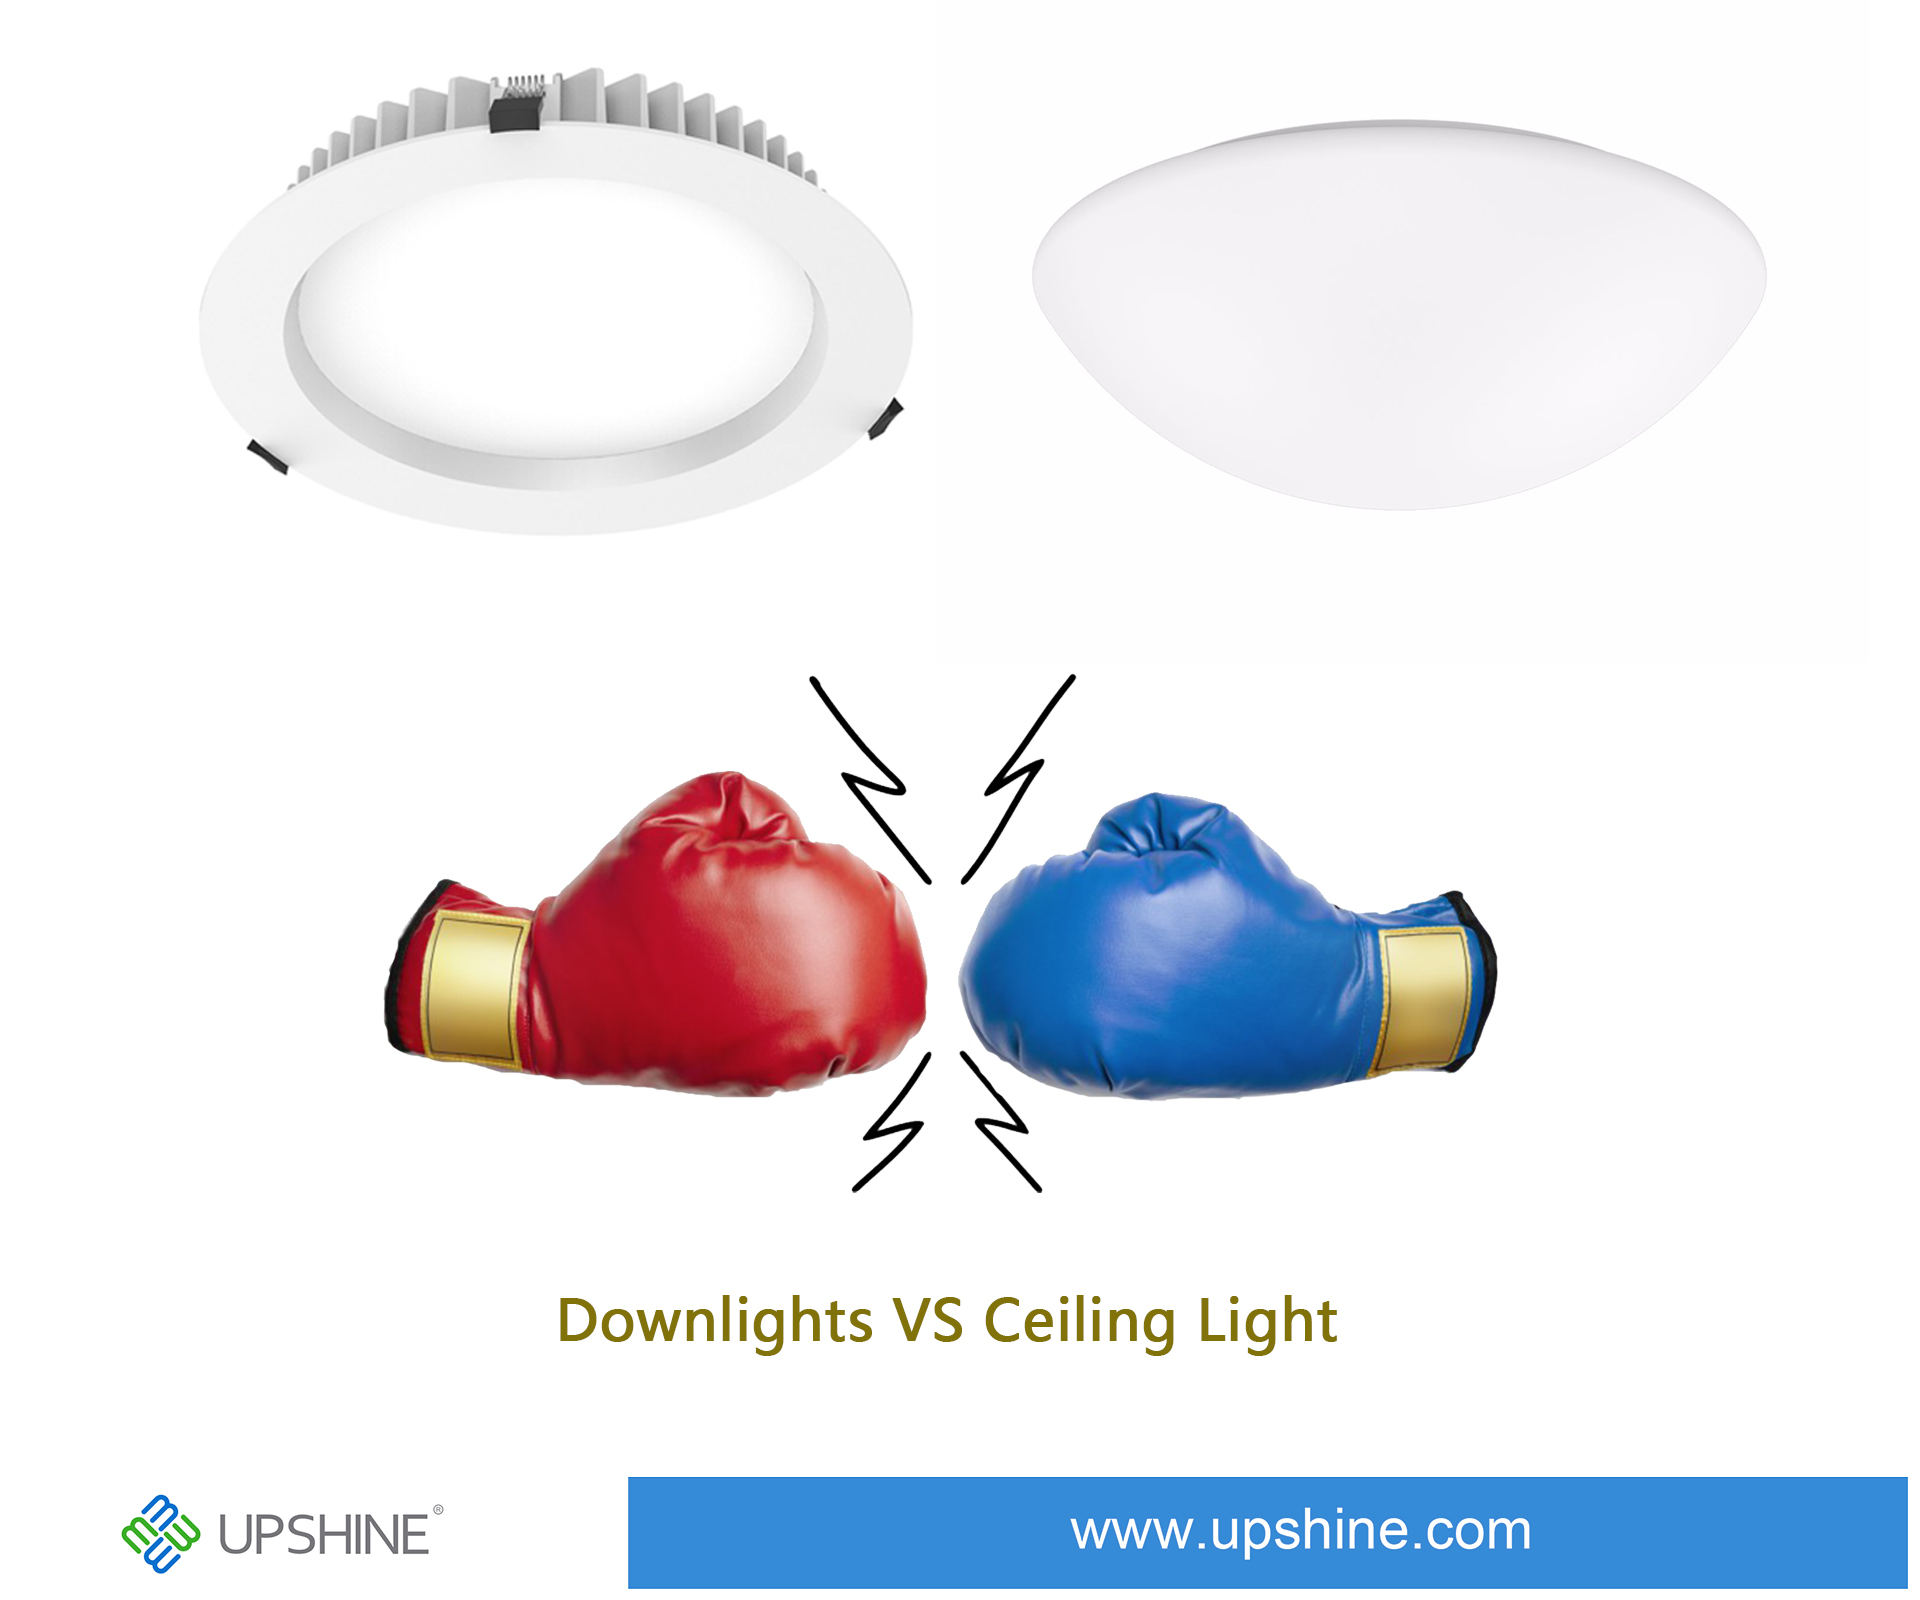 Downlights vs Ceiling Light